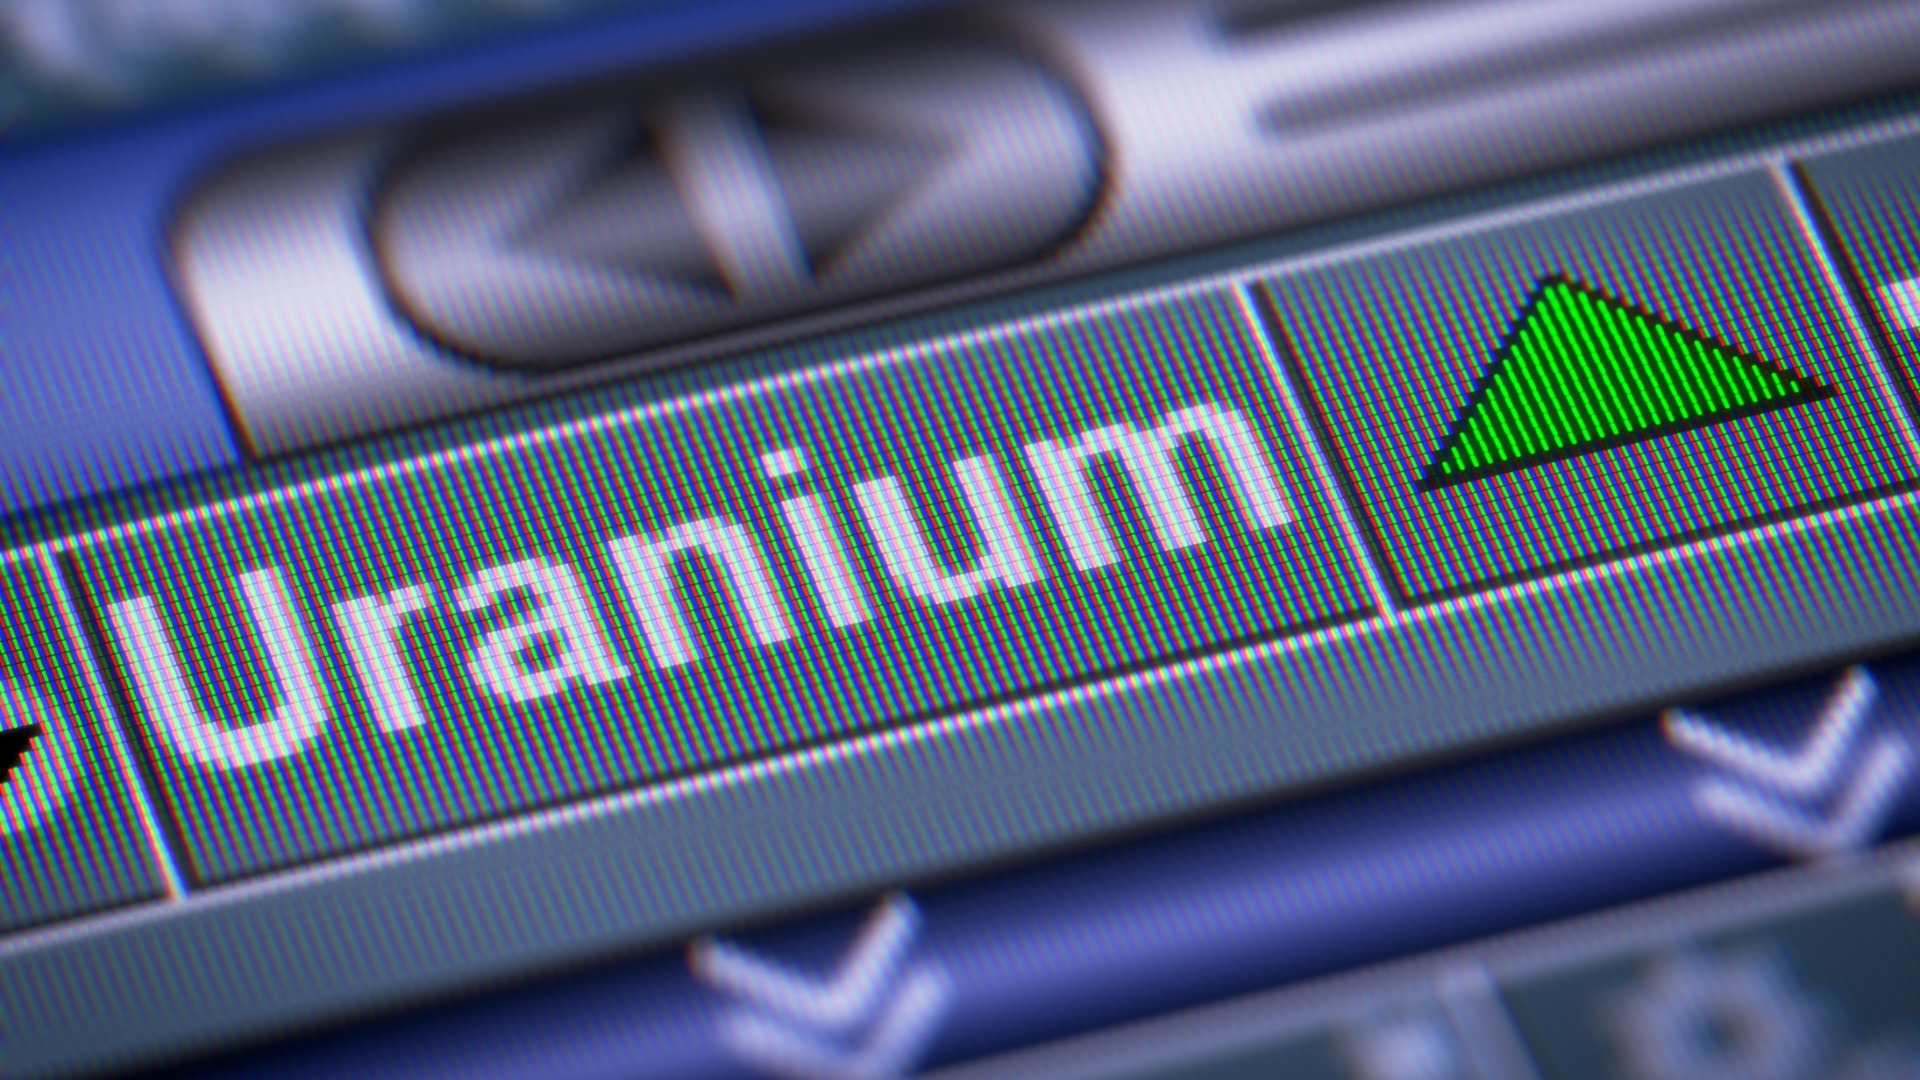 Uranium stock index rises